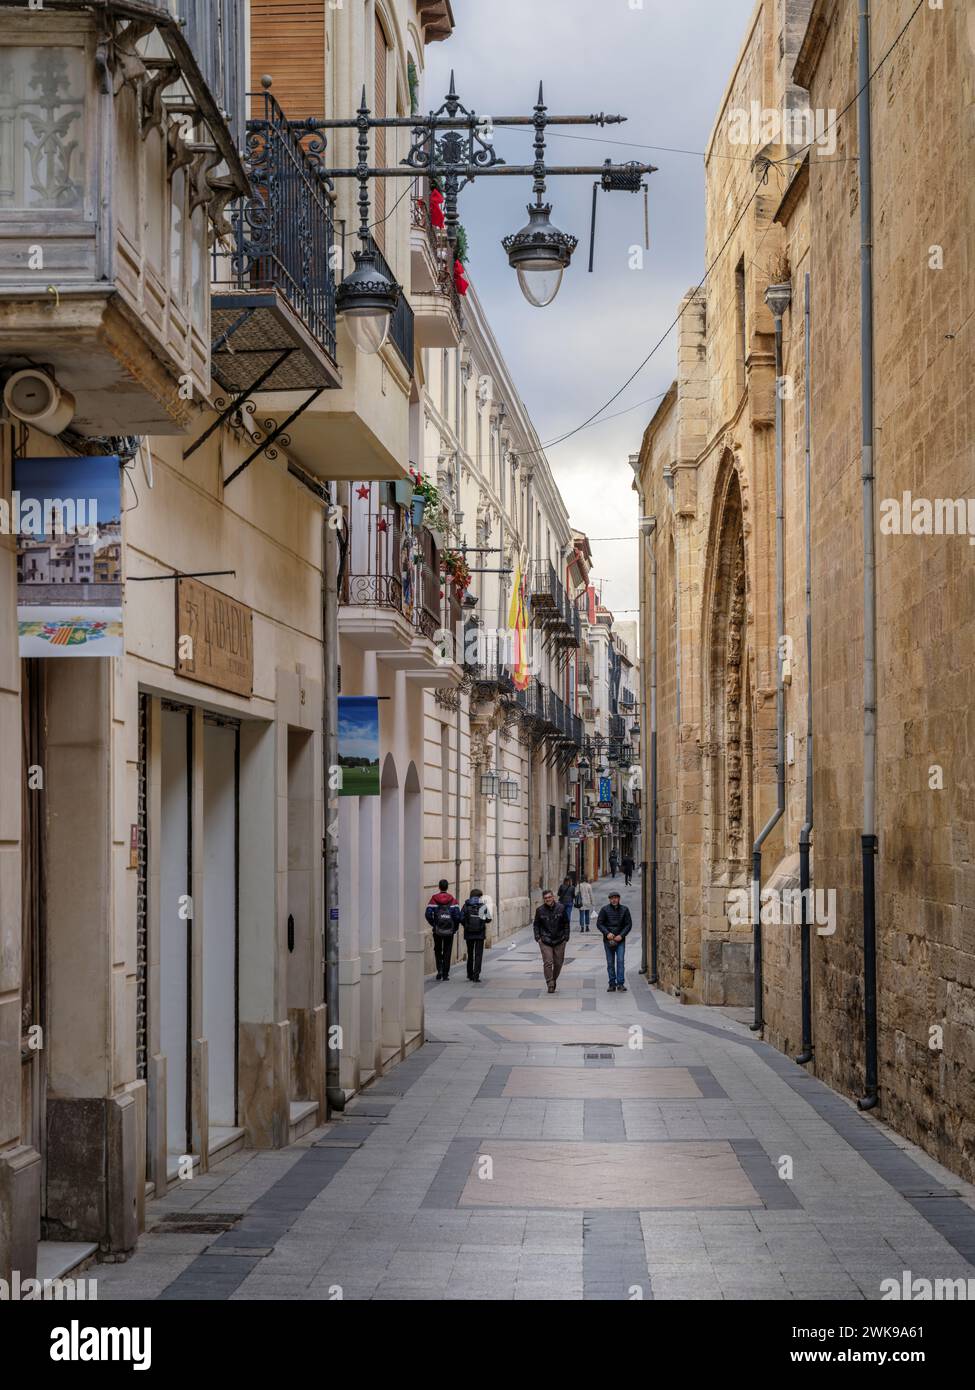 Calle Mayor de Ramón Y Cajal - Orihuela, Alicante, Spagna. Una delle stradine strette che corrono lungo la cattedrale di El Salvador, che è la m di Orihuela Foto Stock